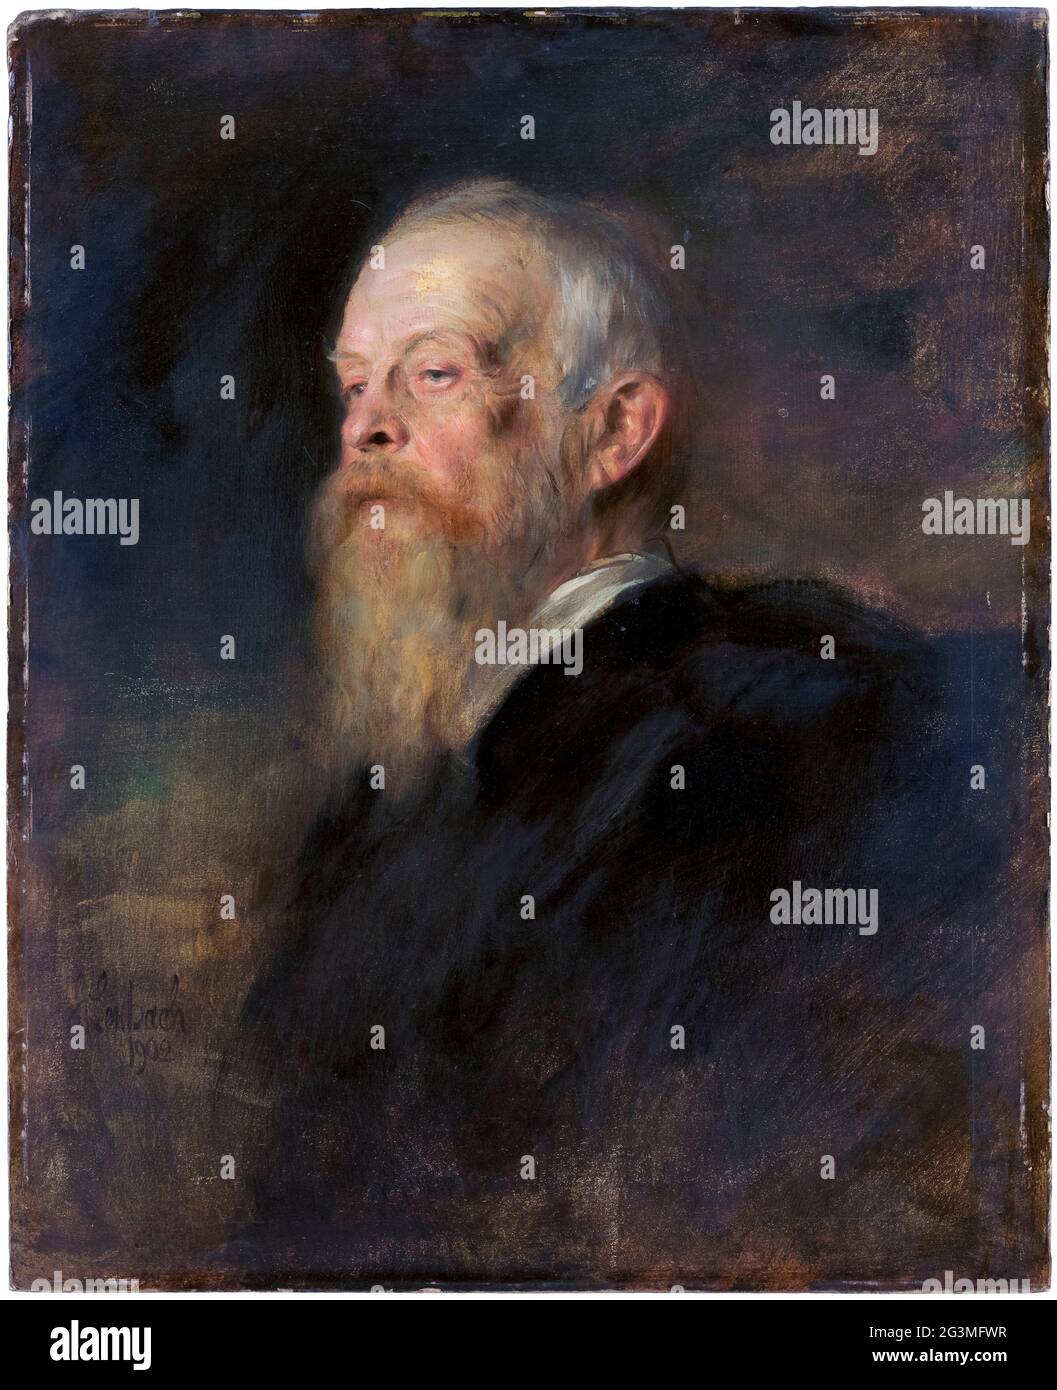 Luitpold (1821-1912) Prince Regent de Bavière, souverain de facto de Bavière, (1886-1912), portrait peint par Franz von Lenbach, 1902 Banque D'Images